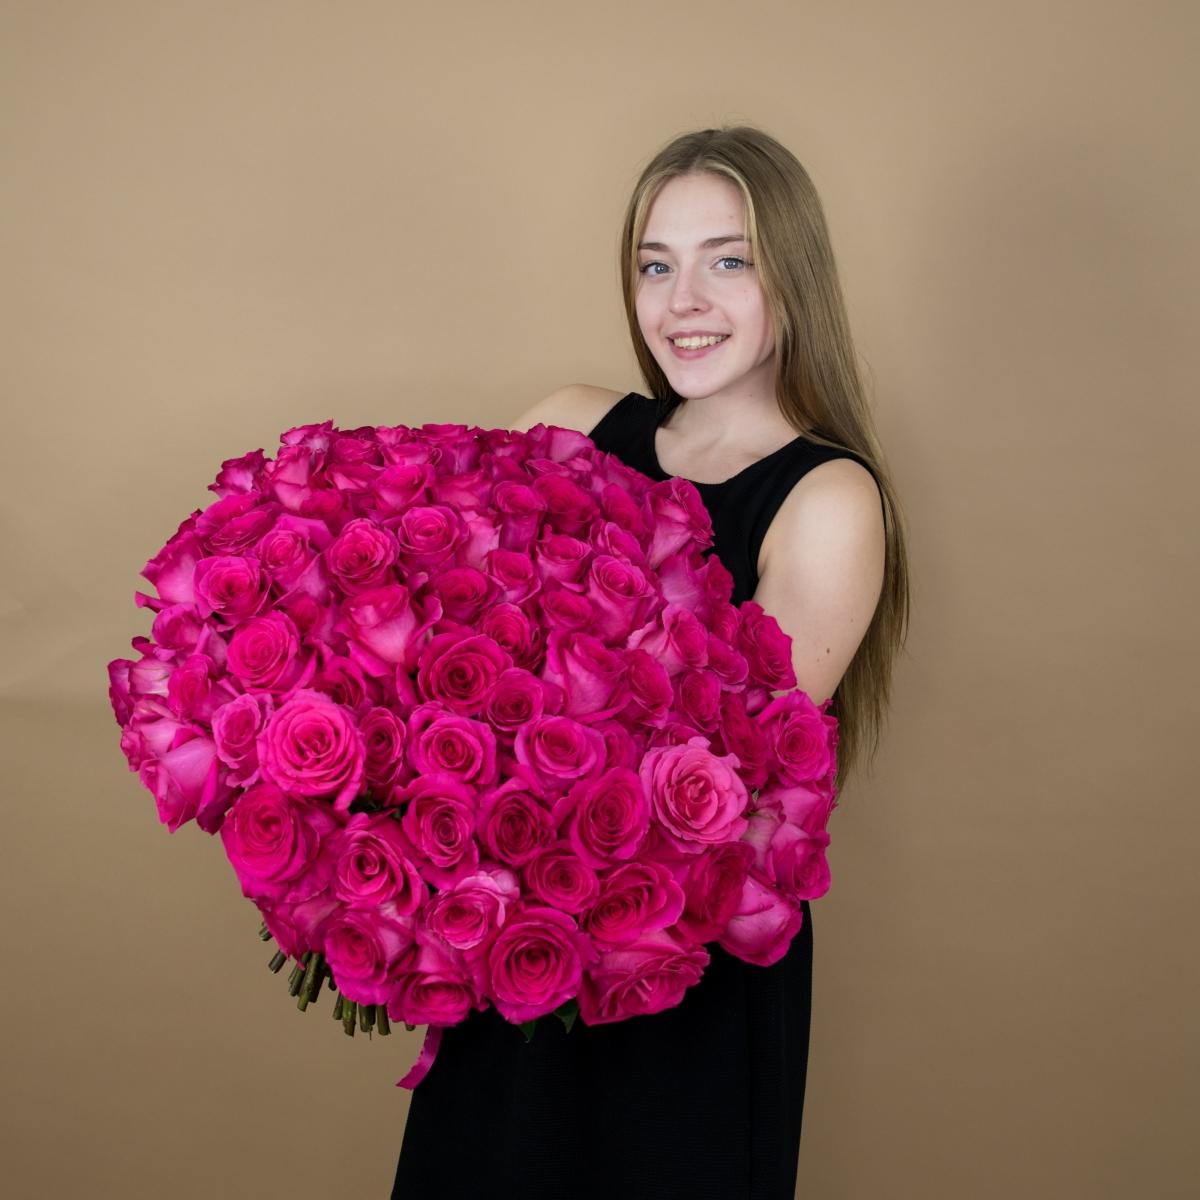 Букет из розовых роз 75 шт. (40 см) код товара  17248psk